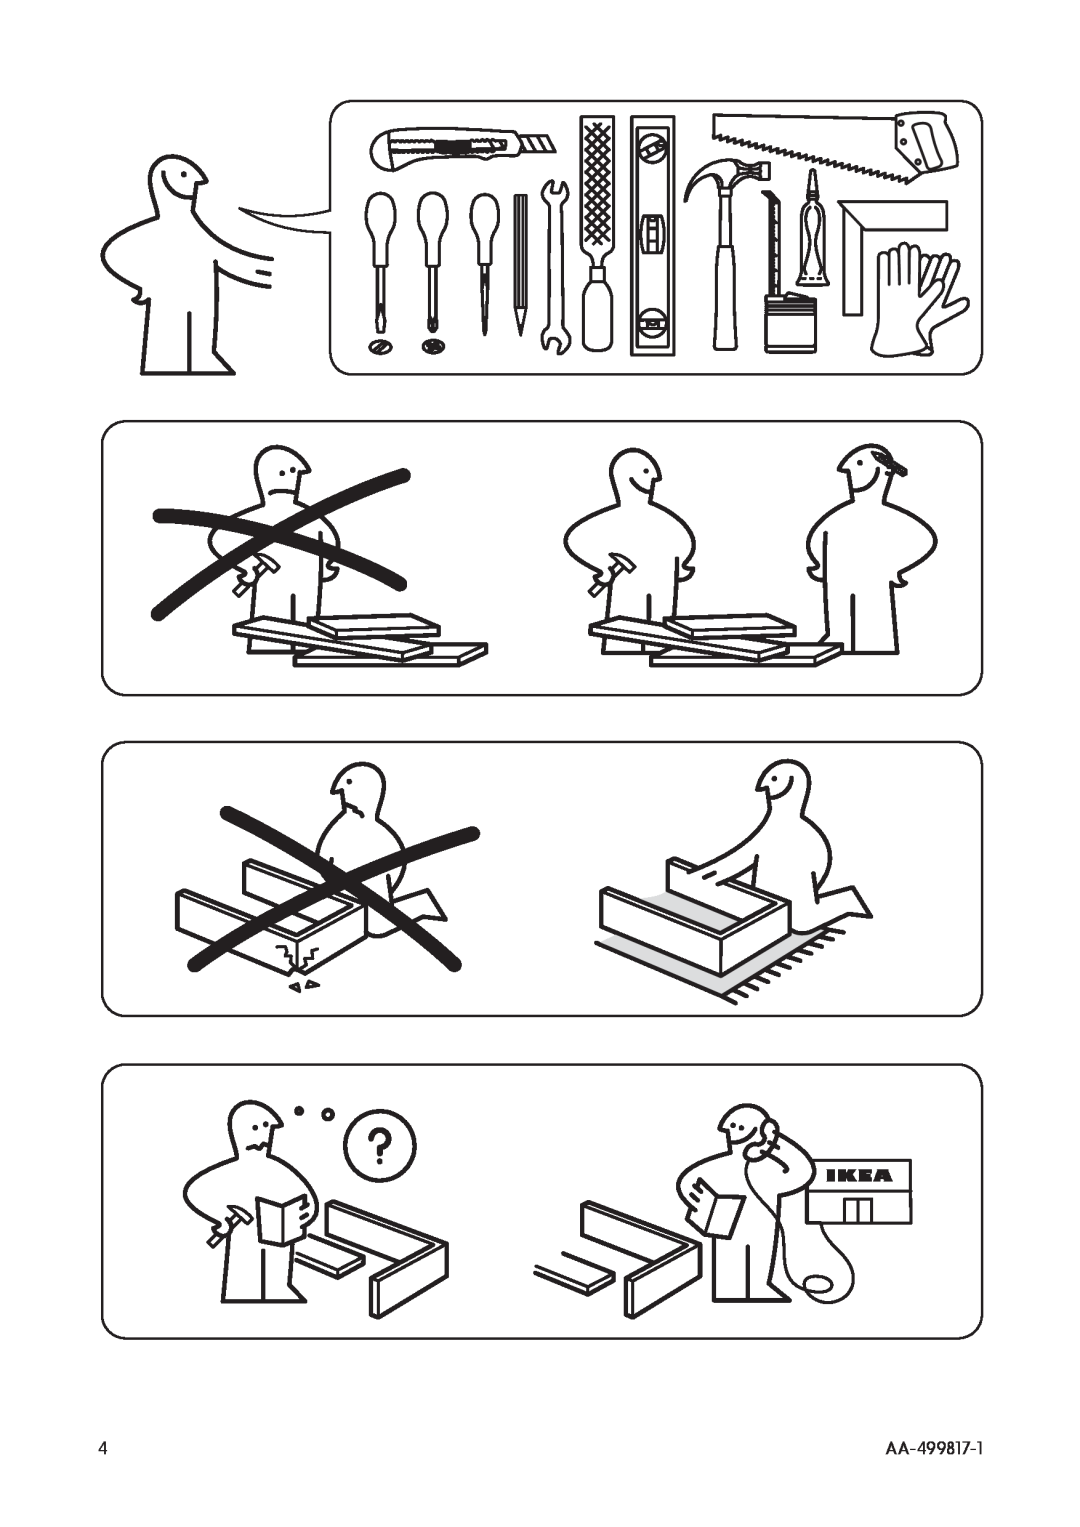 IKEA SF98 manual AA-499817-1 